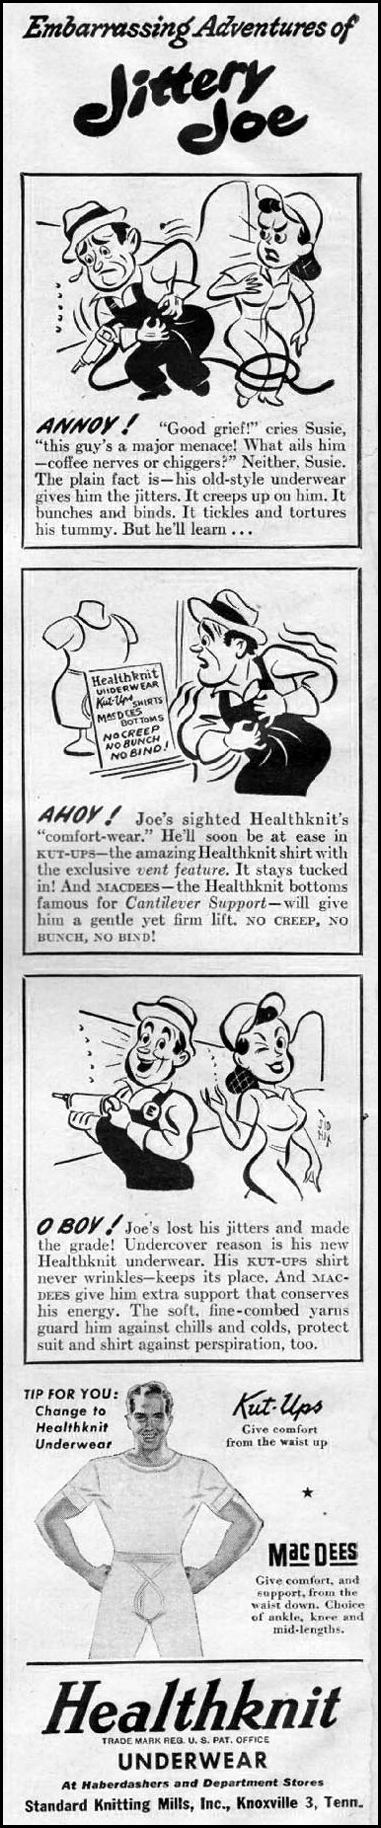 HEALTHKNIT UNDERWEAR
LIFE
10/23/1944
p. 8